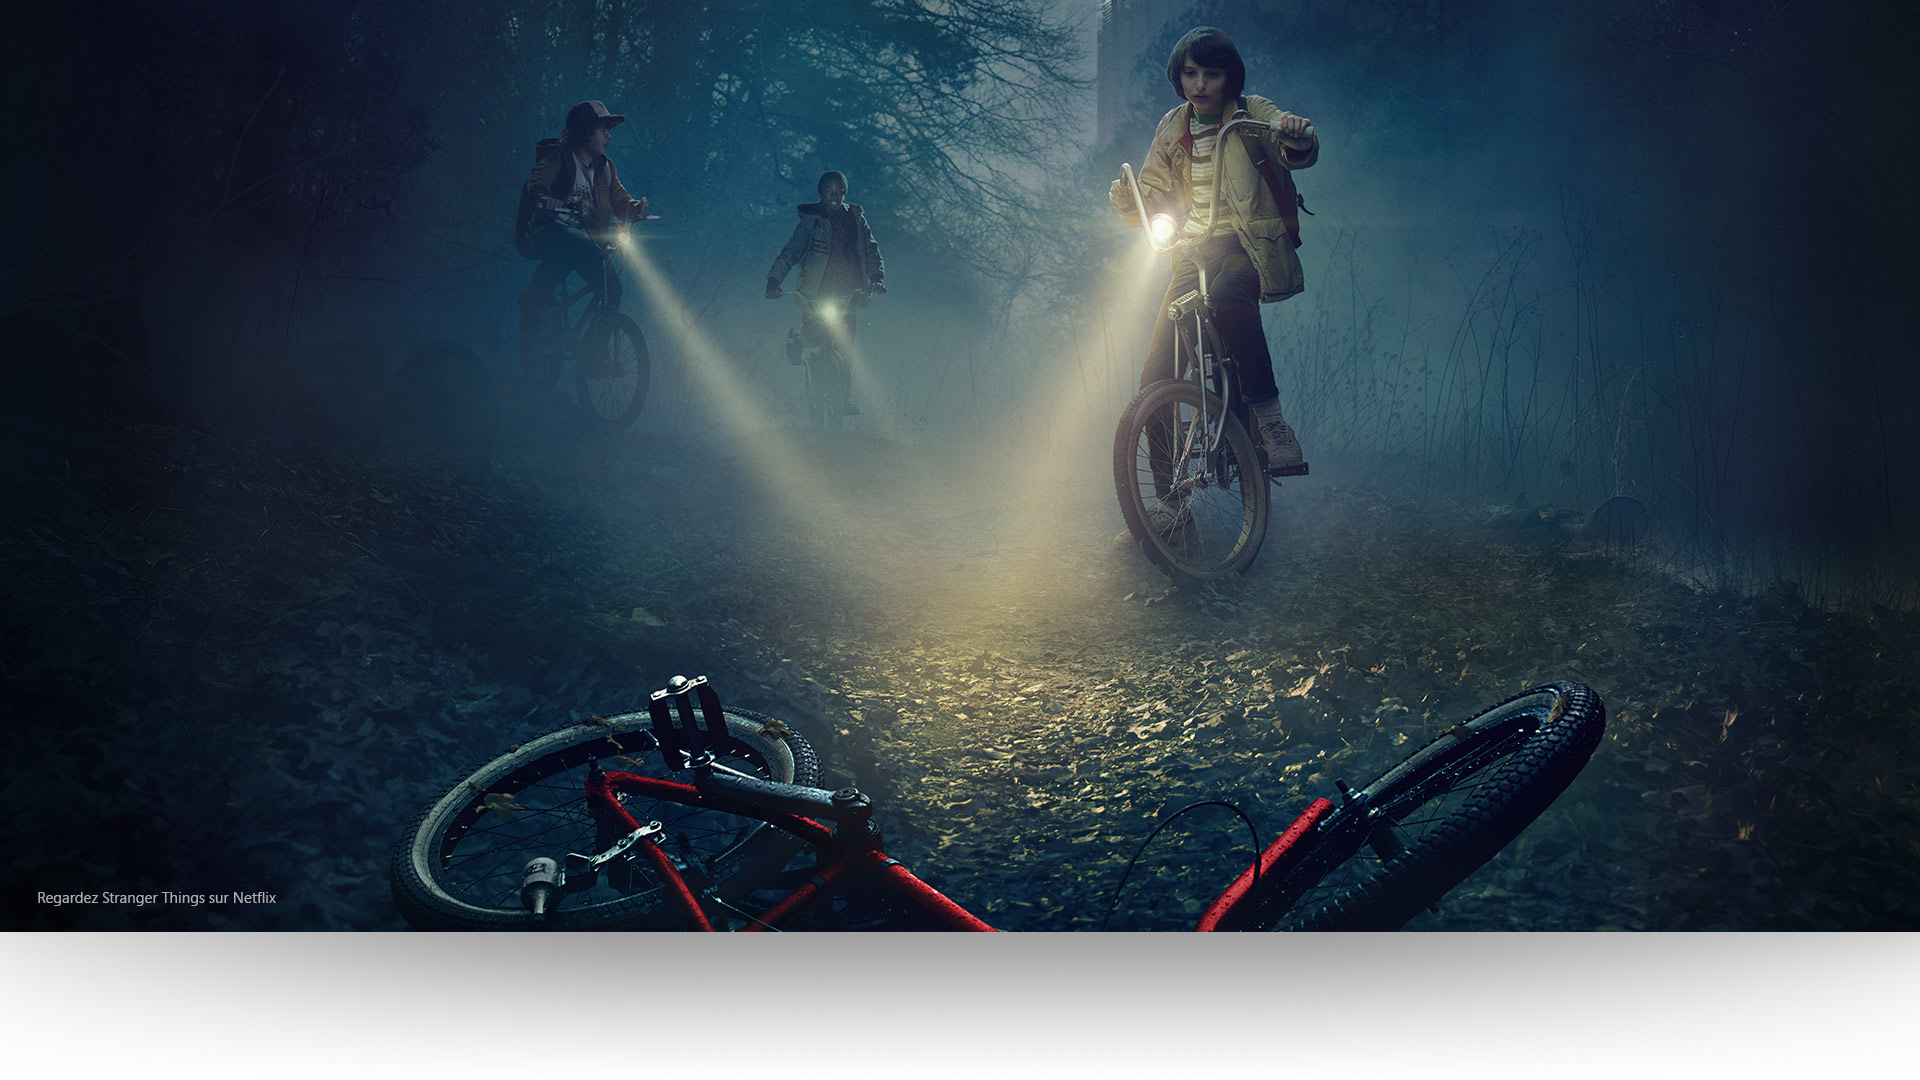 Stranger Things - Dustin, Lucas et Mike éclairent un vélo abandonné sur un sentier forestier lugubre.